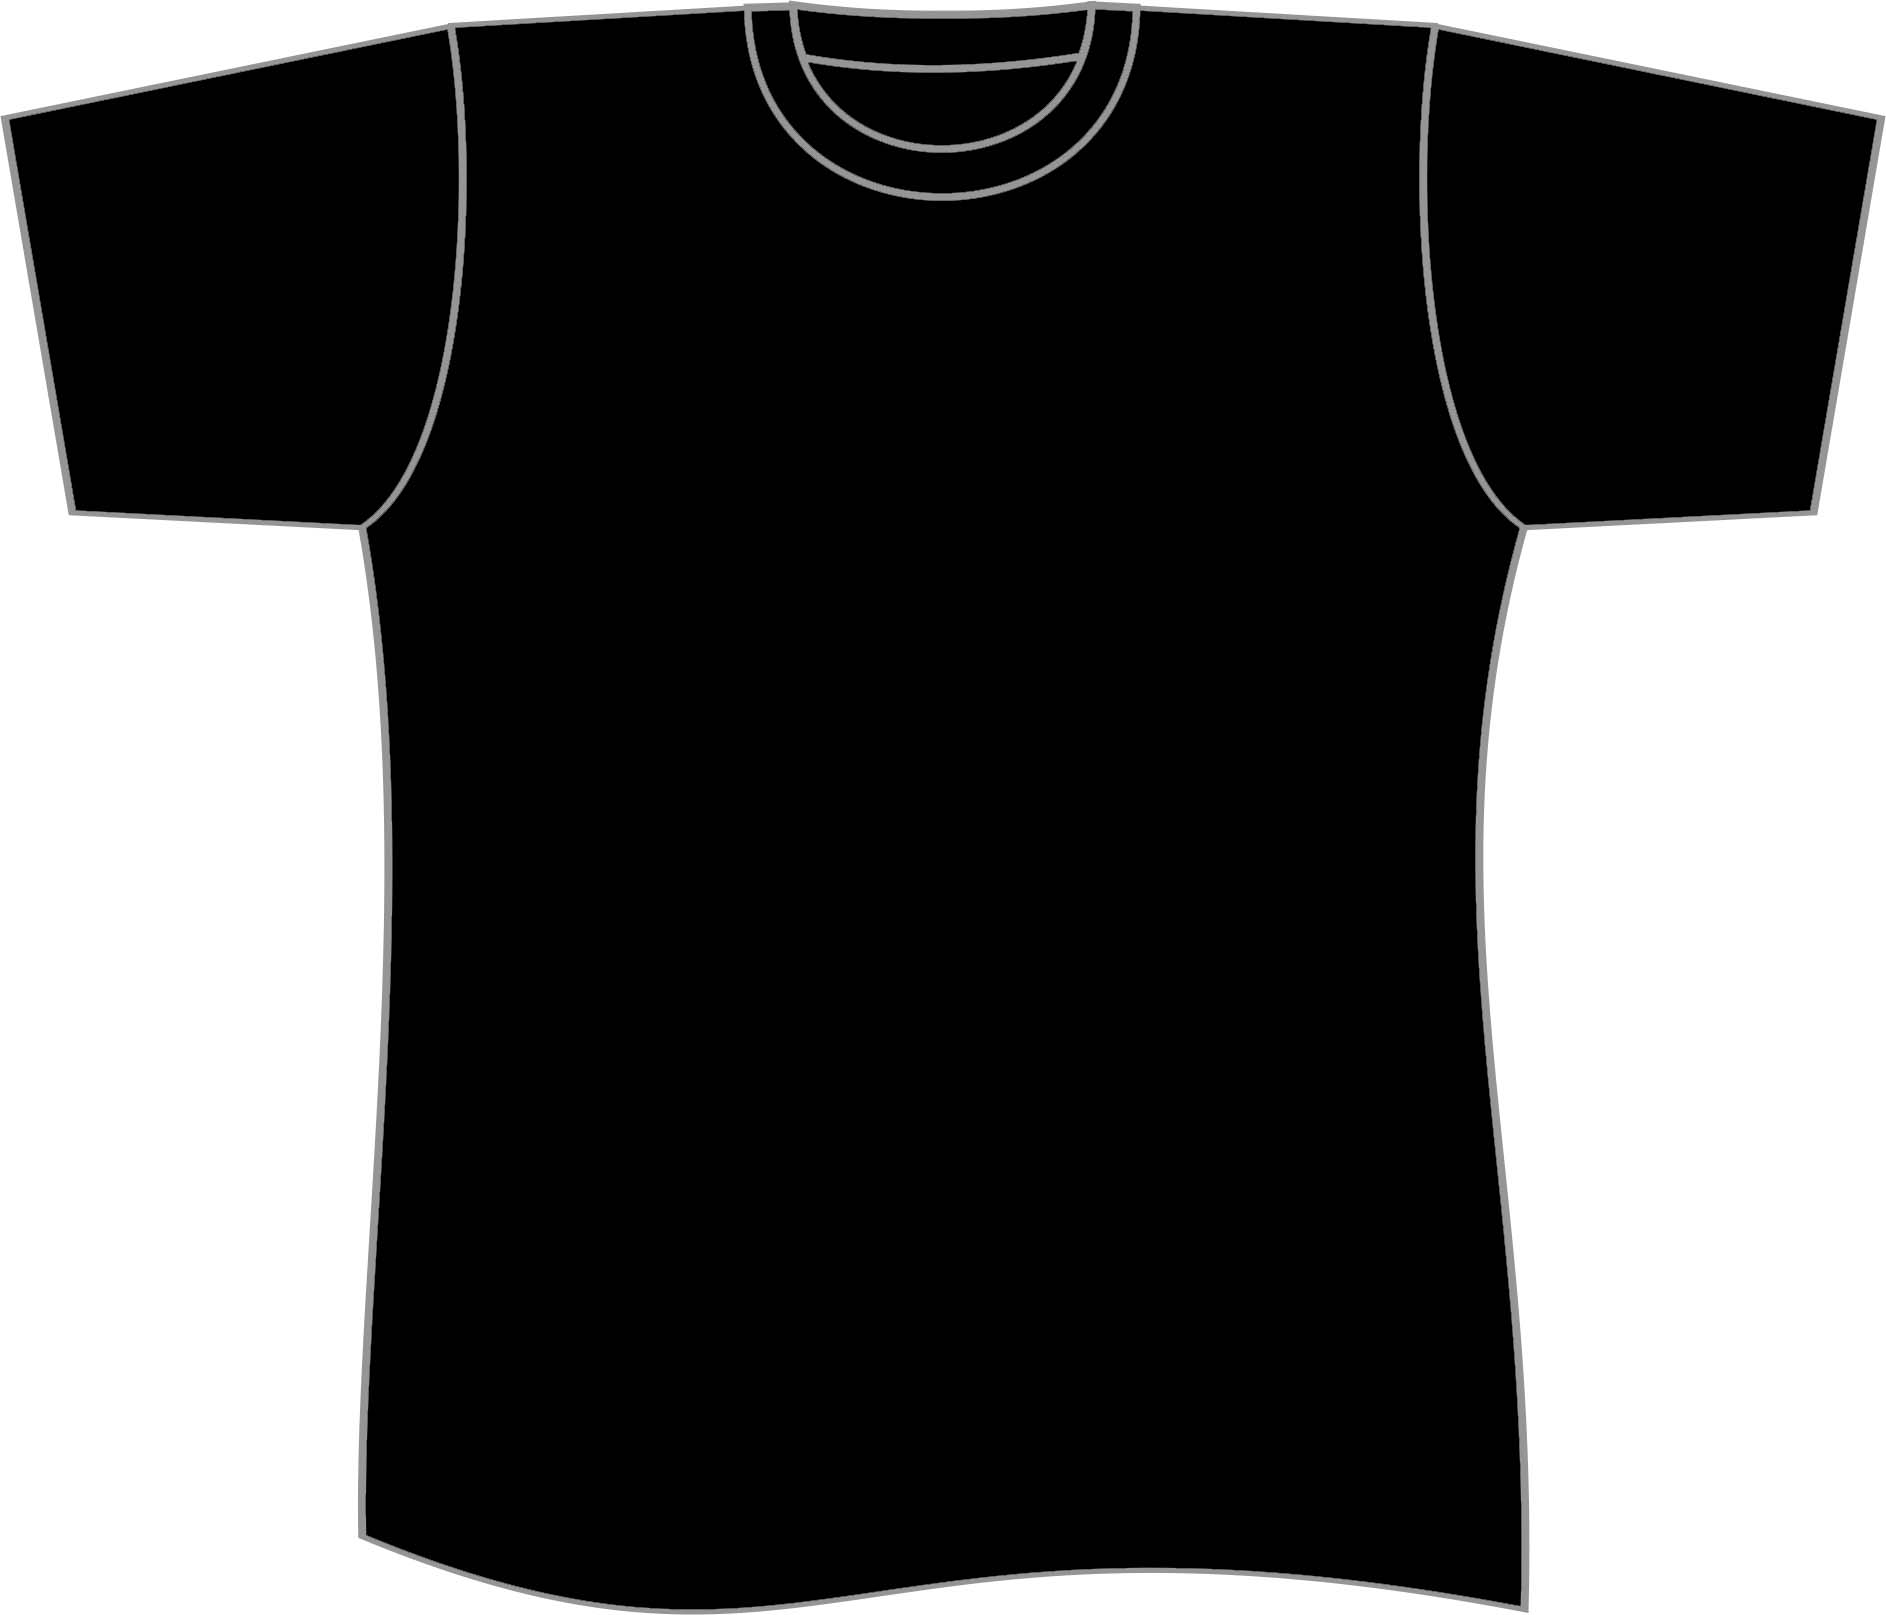 Plain T Shirts Designkaosbandung